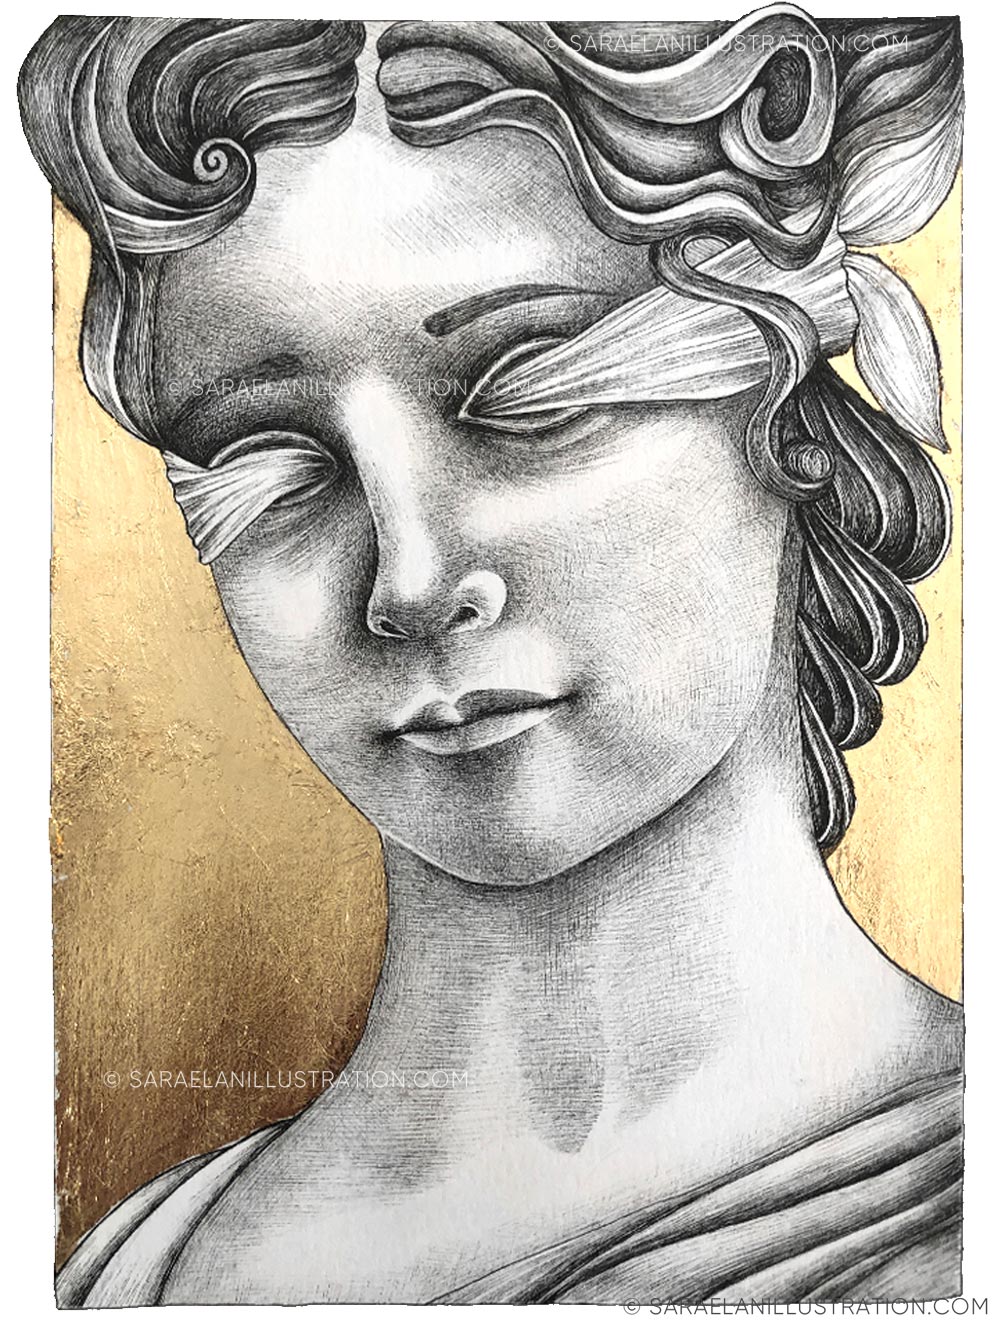 Disegno della dea Fortuna romana bendata con foglia oro